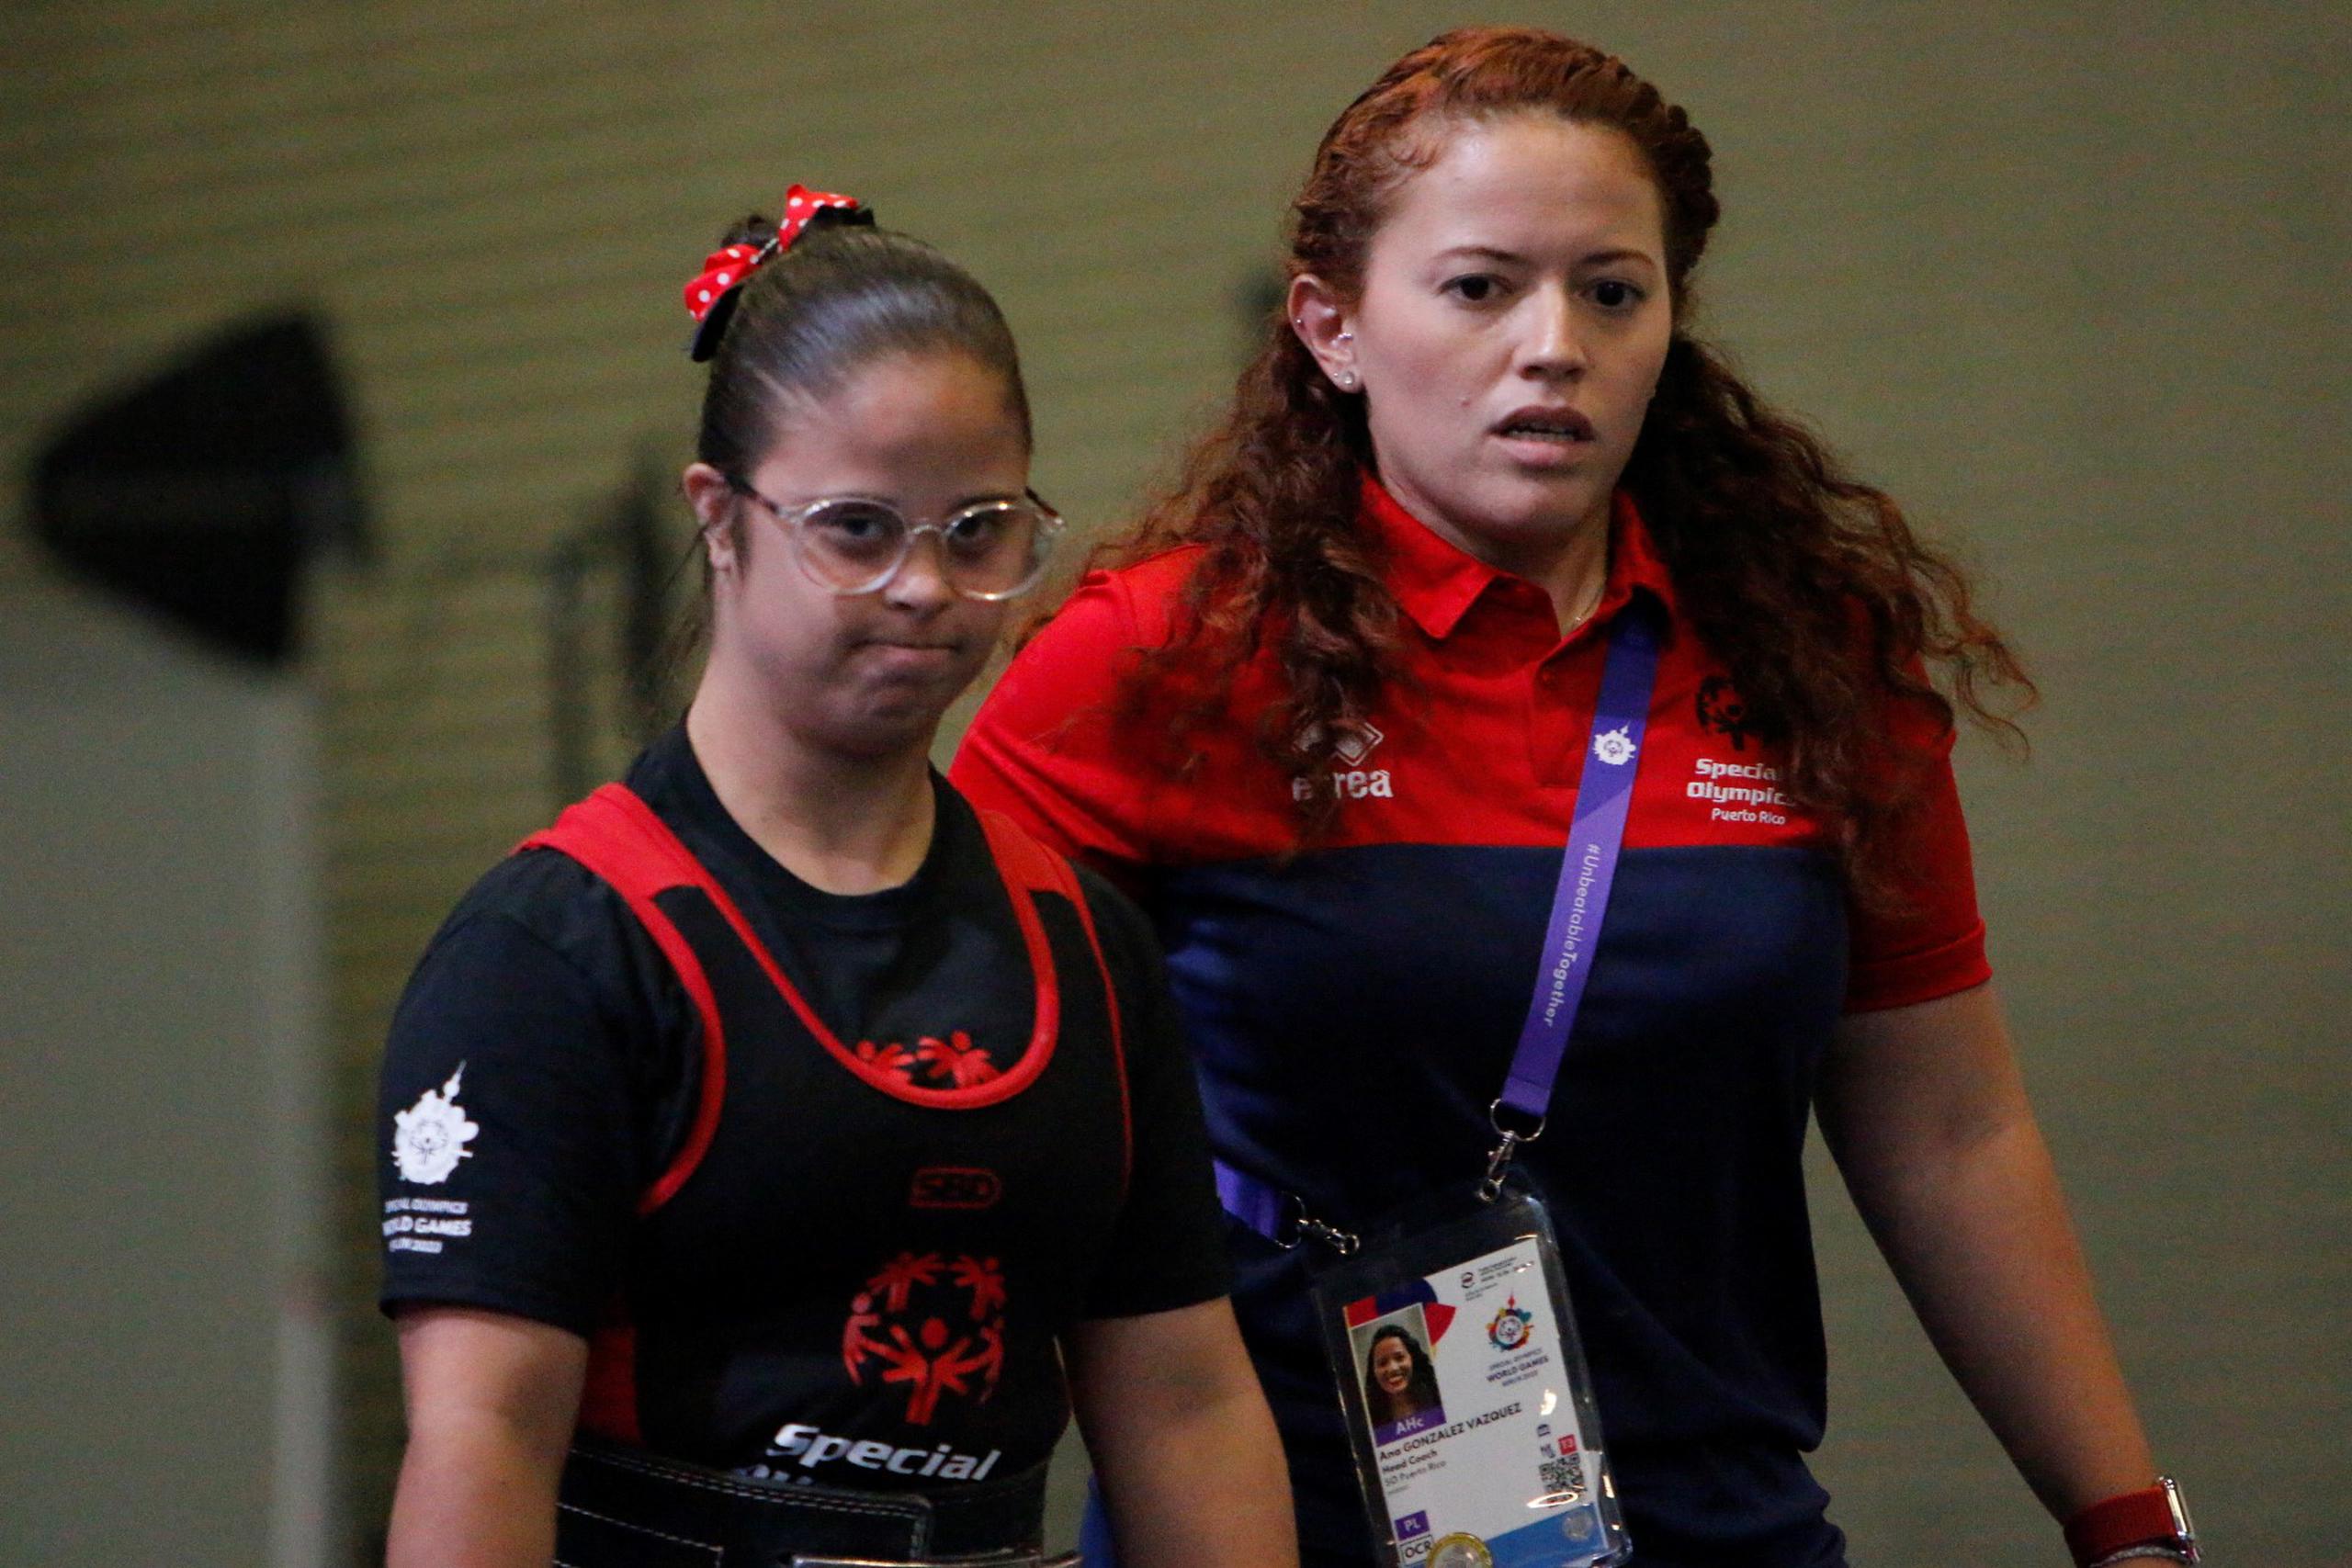 Joyce de Jesús, la fémina que compitió en el levantamiento de pesas en los Juegos Mundiales, fue acompañada a su competencia por su entrenadora Ana González.